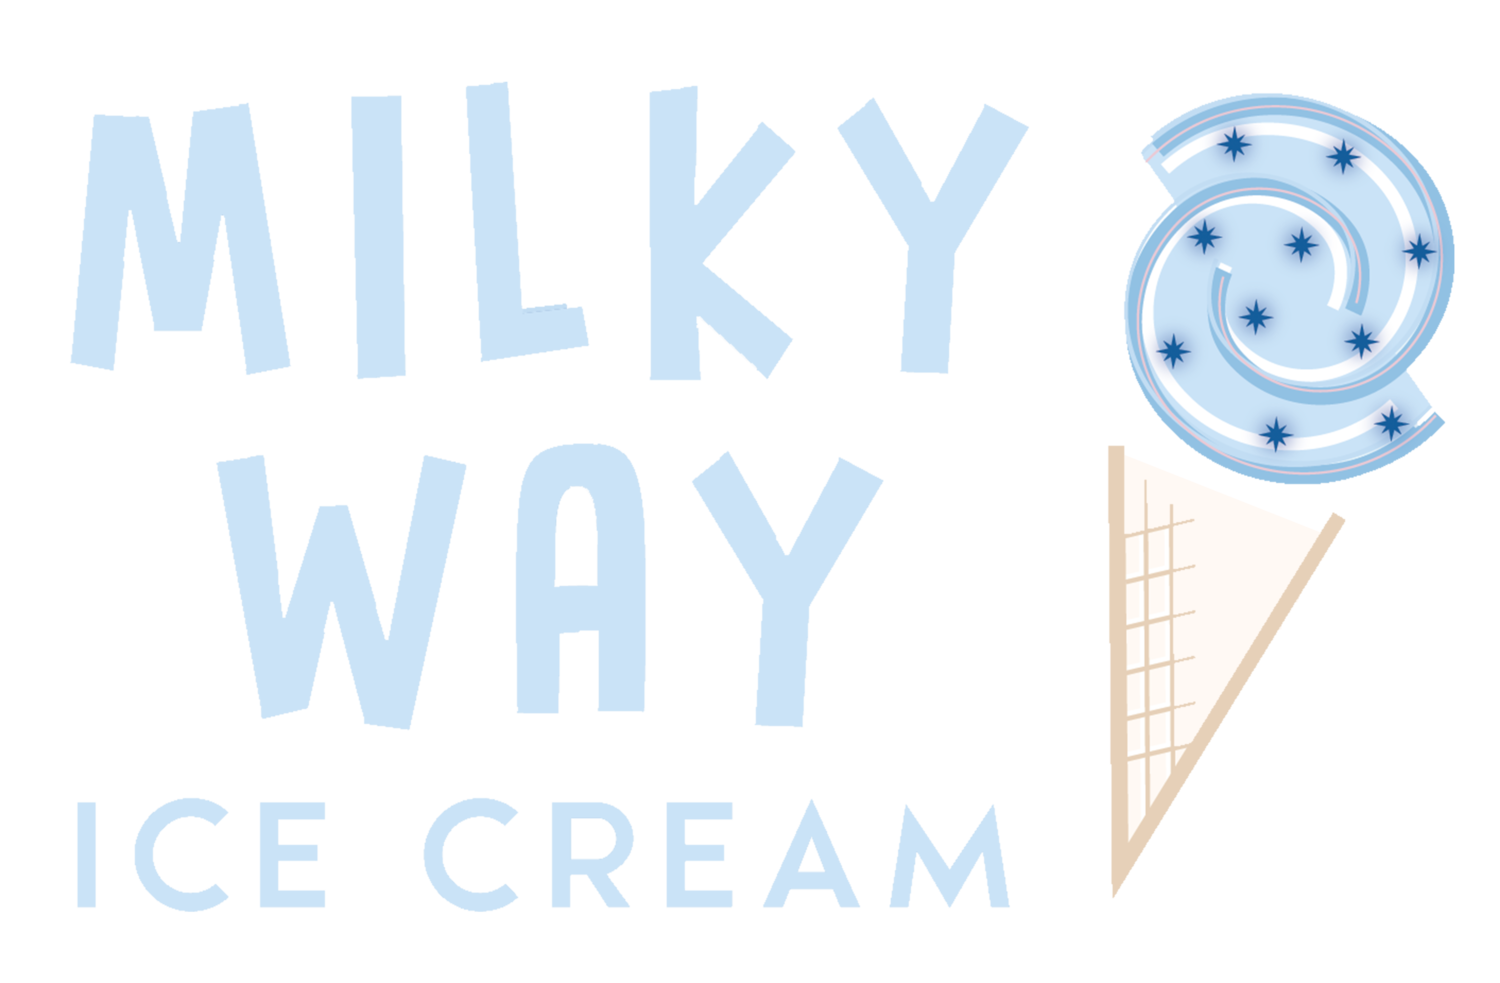 Milky Way Ice Cream